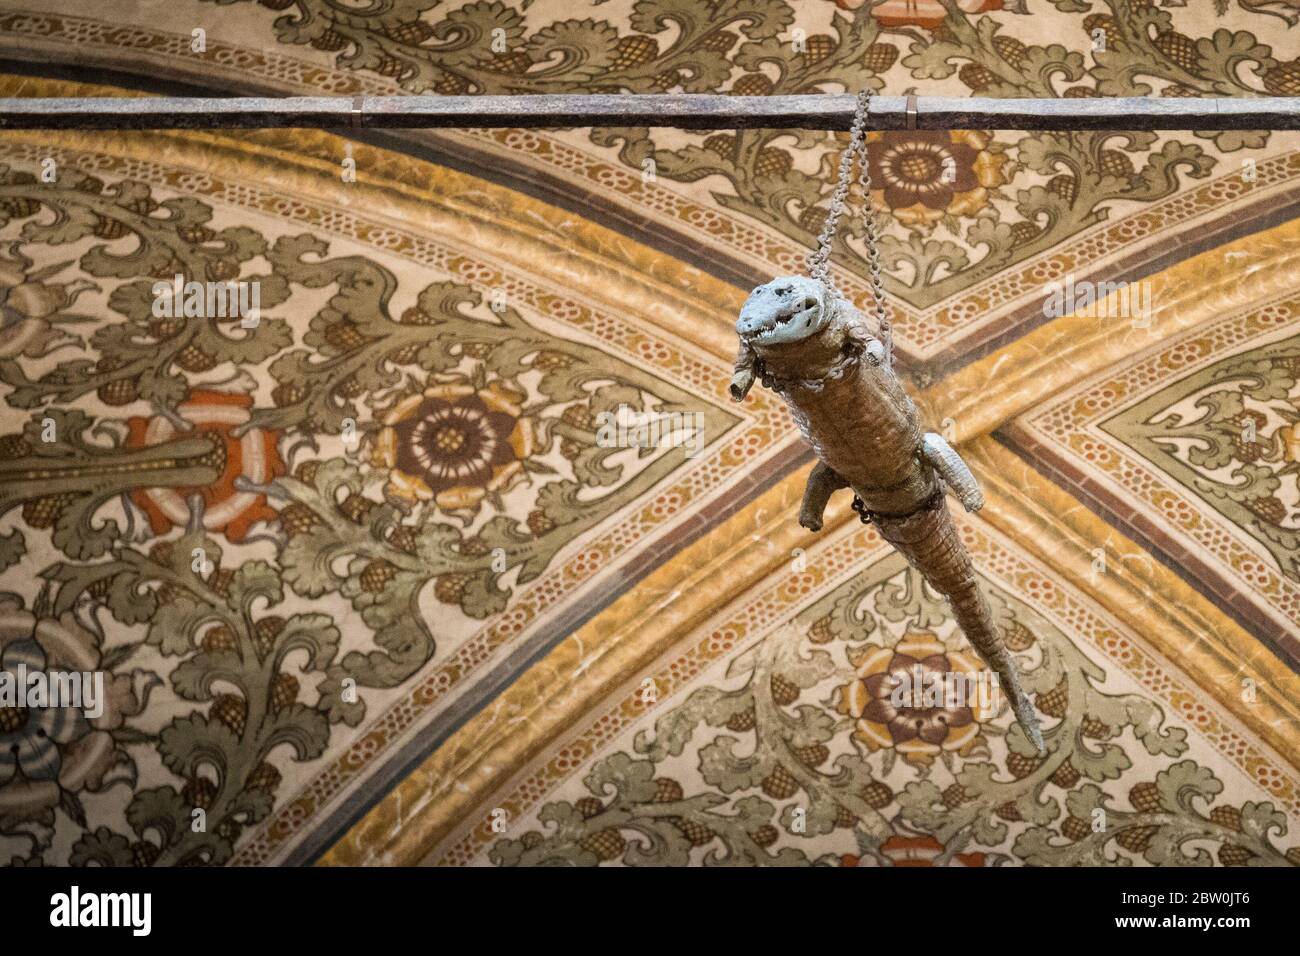 Das Krokodil hängt von der Decke in der Wallfahrtskirche Santa Maria delle Grazie, Curtatone, Provinz Mantua, Italien. Das ausgestopfte Tier ist suppo Stockfoto